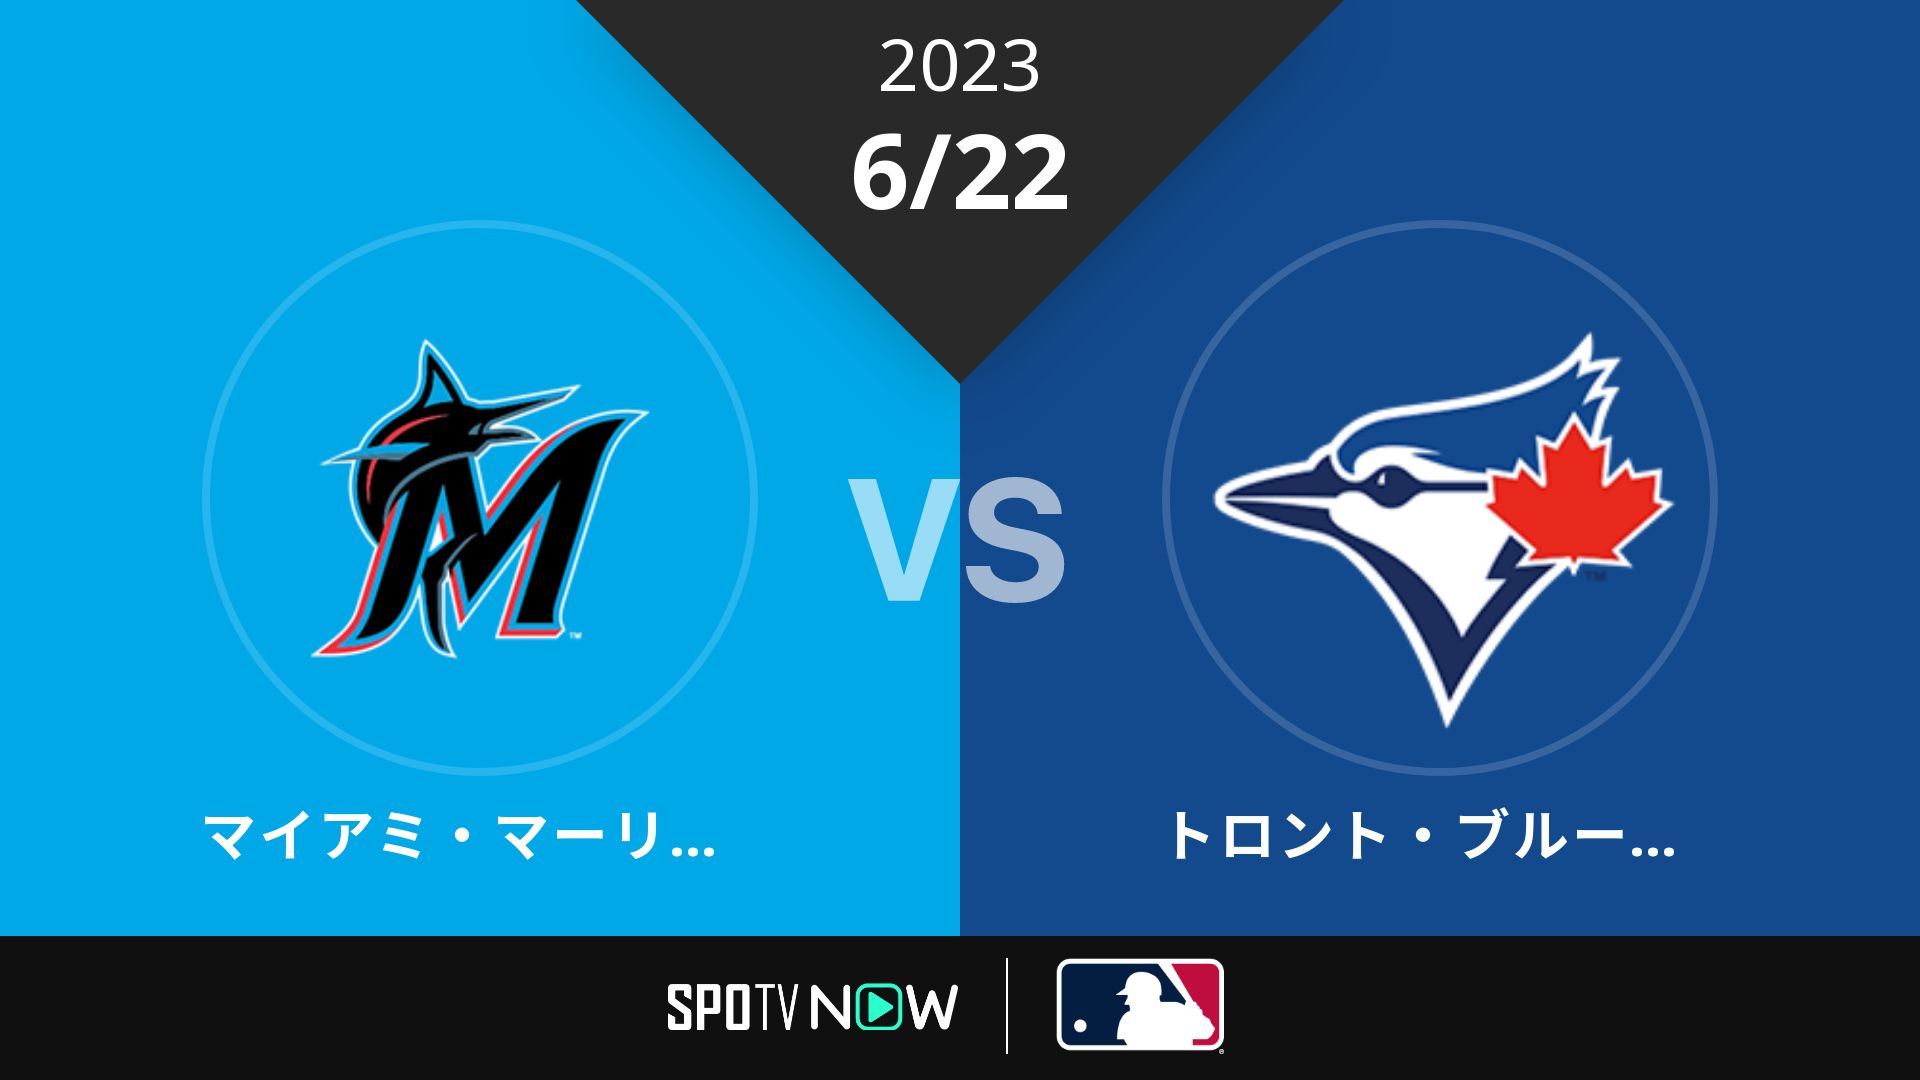 2023/6/22 マーリンズ vs ブルージェイズ [MLB]